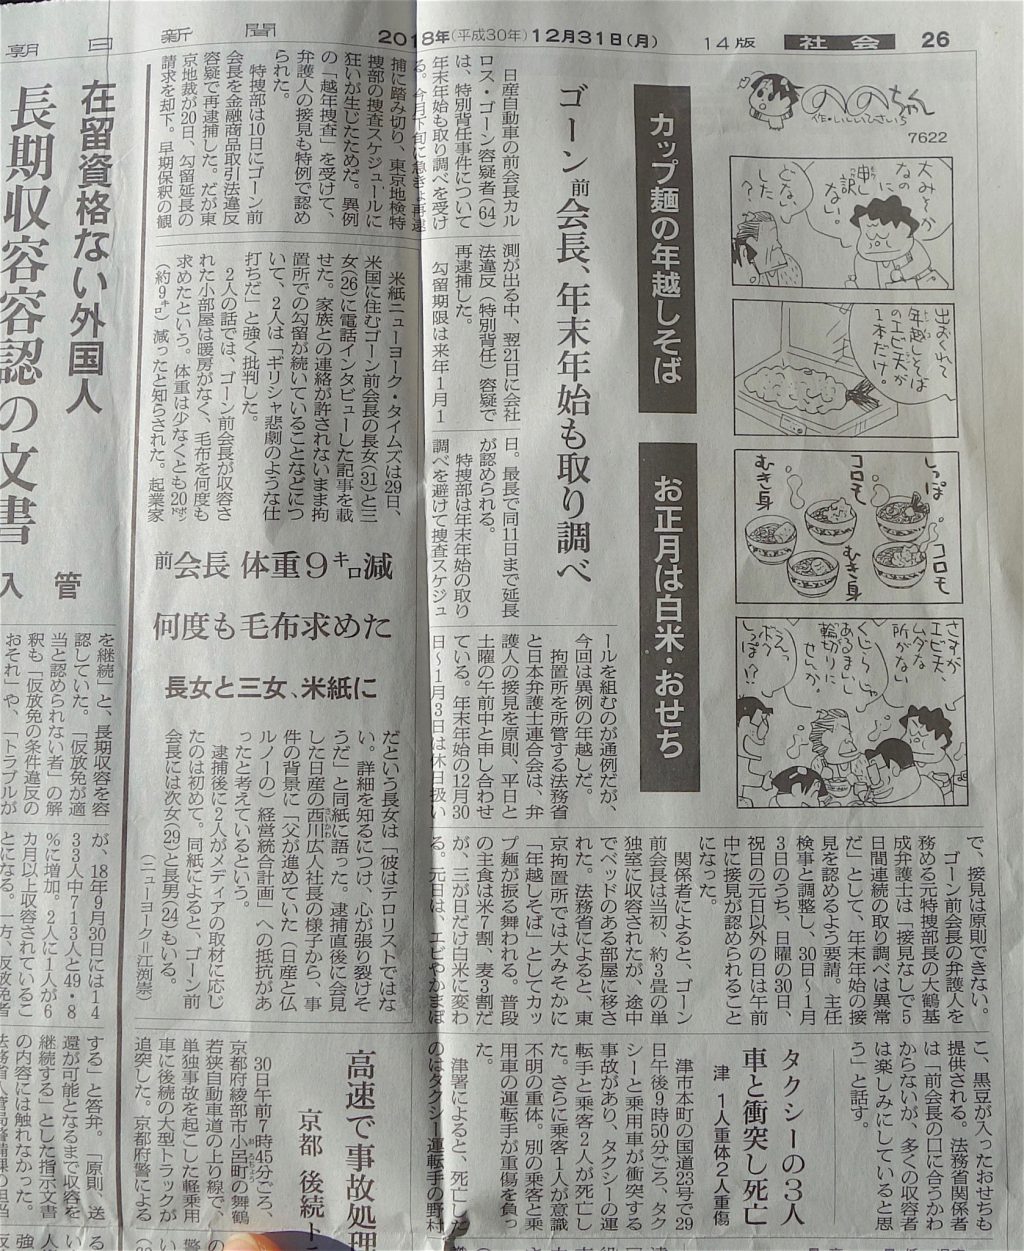 朝日新聞 2018年12月31日、日産 ゴーン